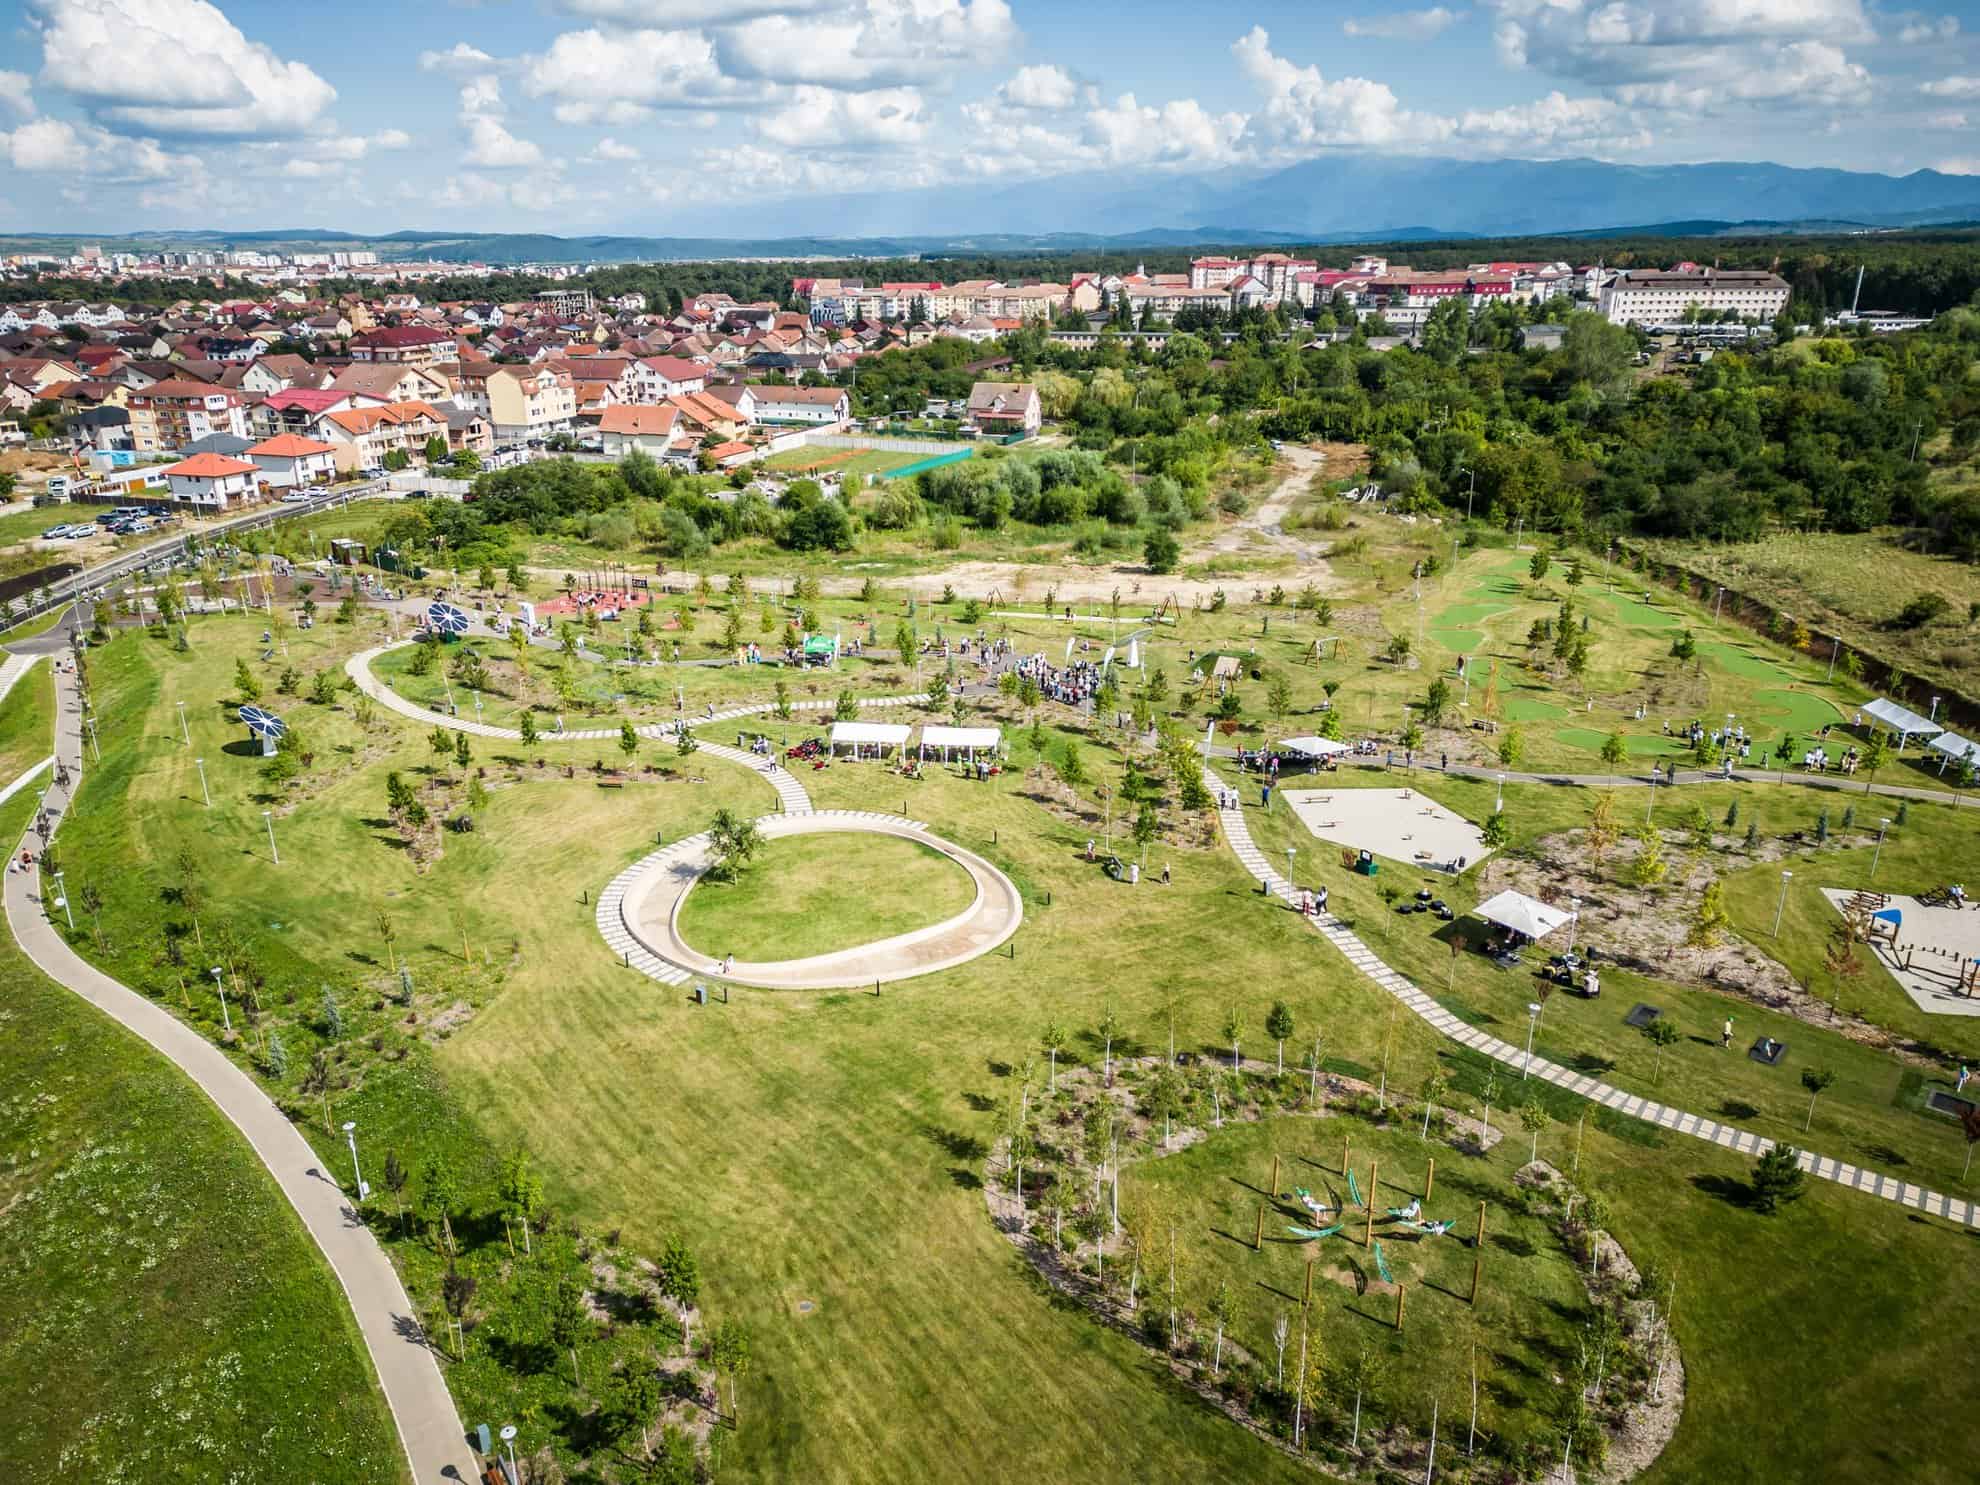 parcul belvedere, pistele de biciclete de pe malurile cibinului și comandamentul nato, marile investiții inaugurate în 2023 la sibiu